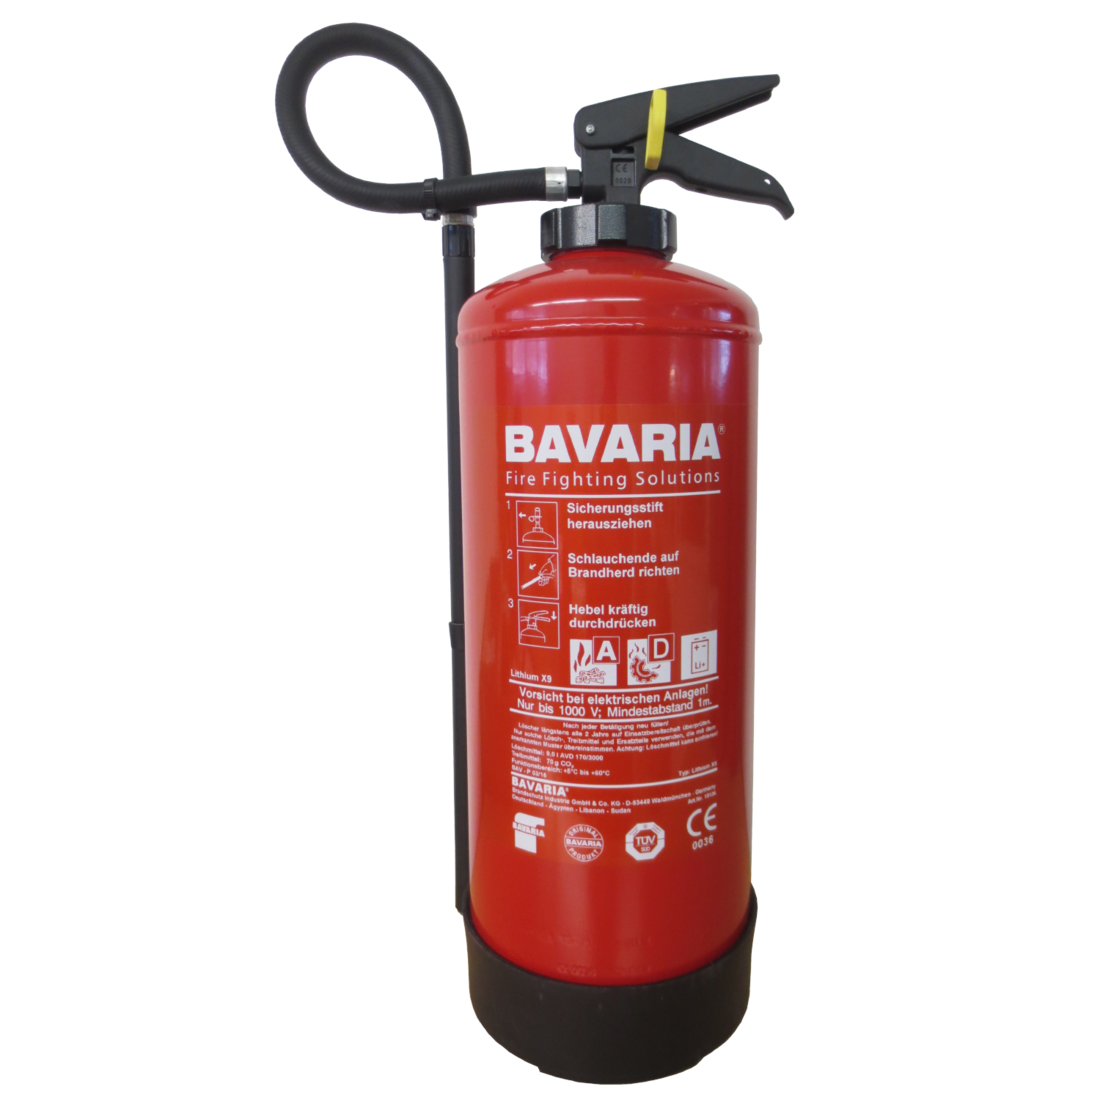 Lithium fire extinguisher